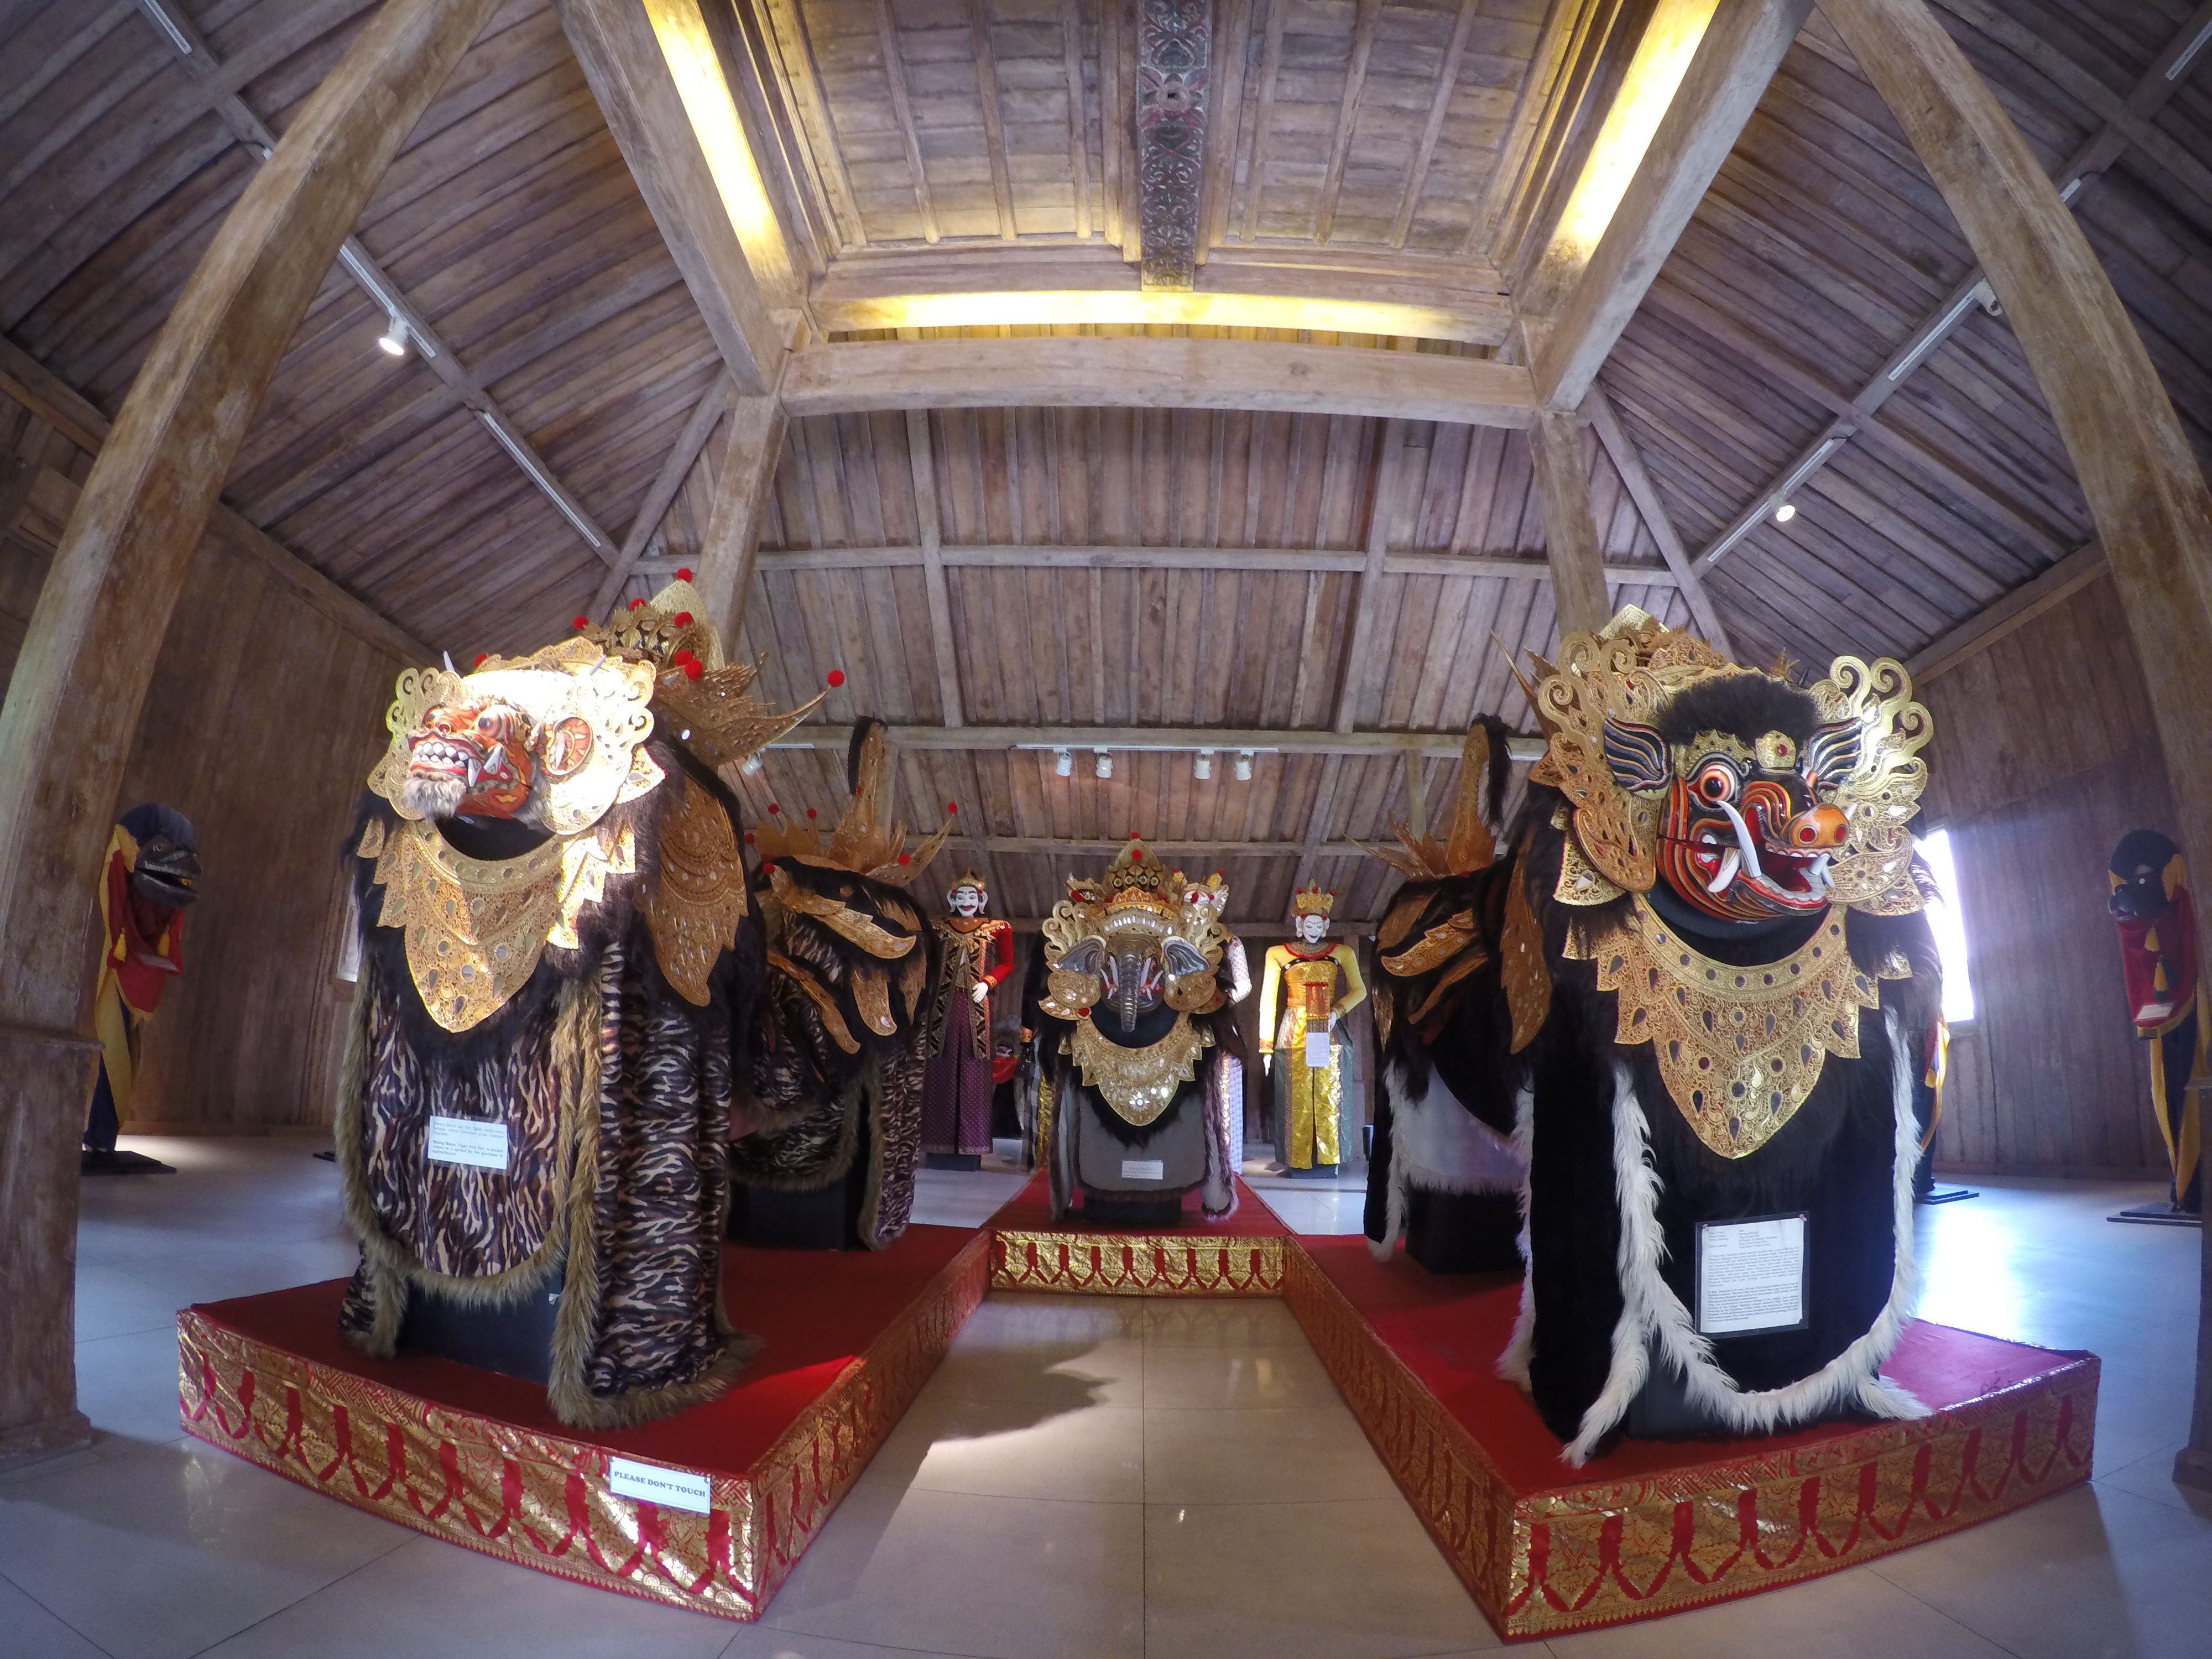 Museum Di Bali